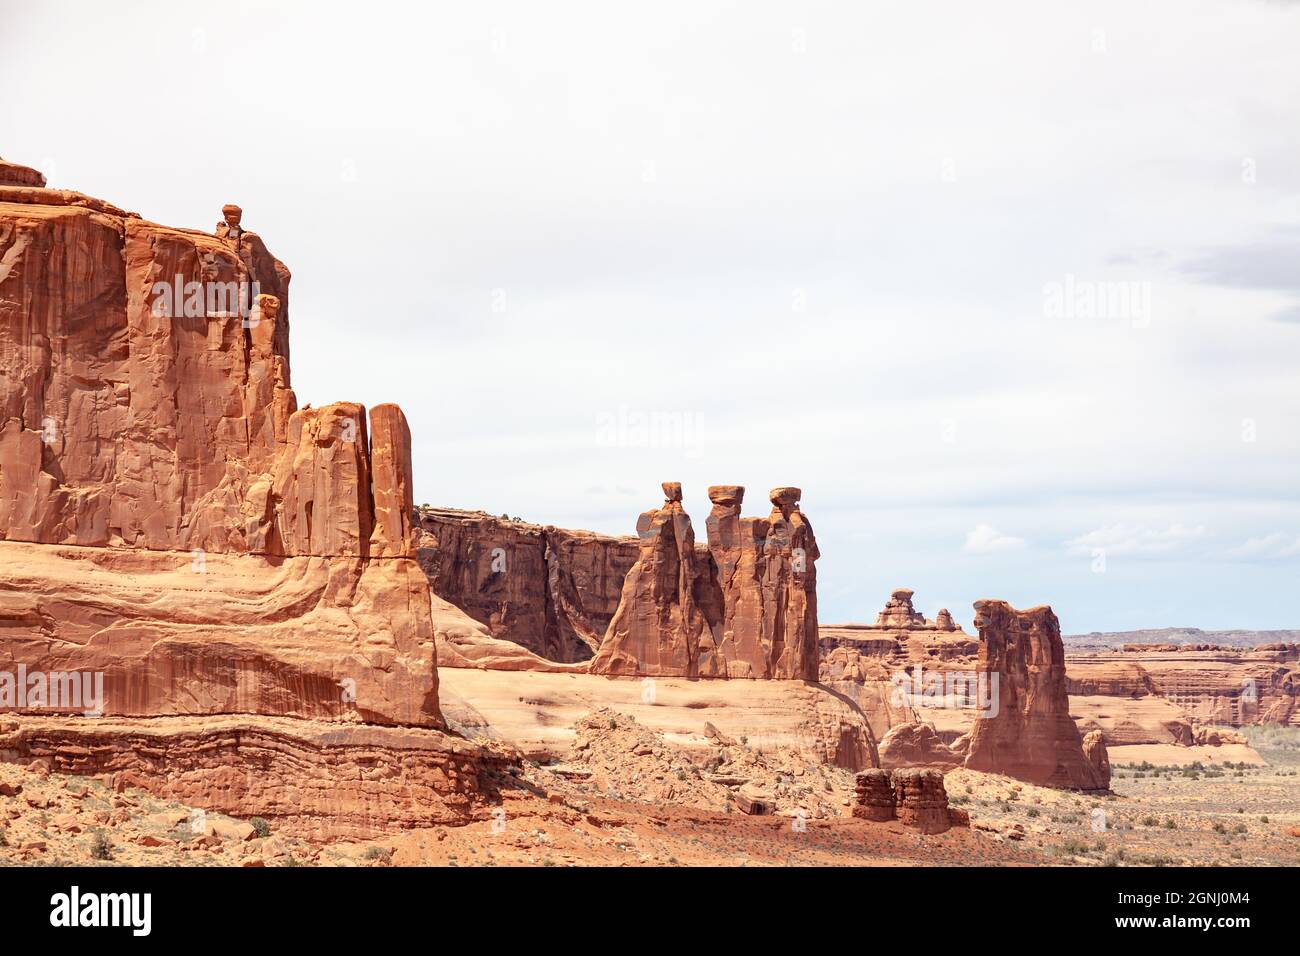 Les trois gossips formation arches parc national Desert rock vista moab utah usa Banque D'Images